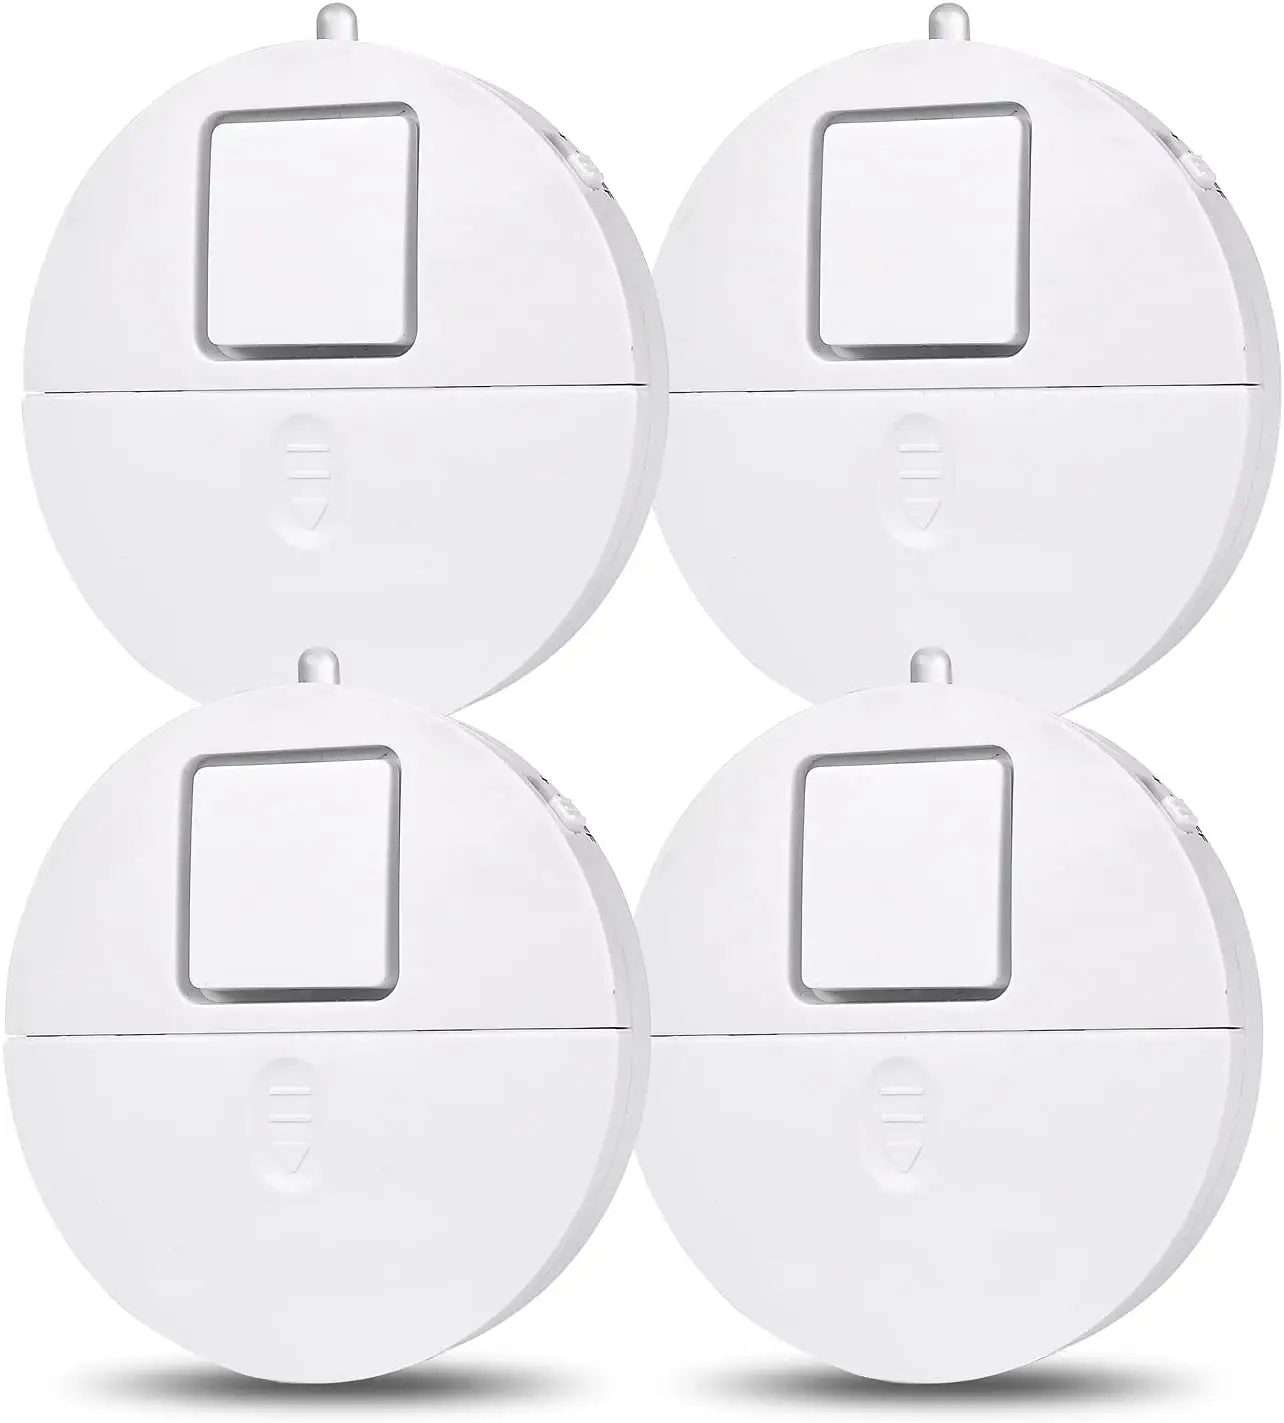 Hochwertige Sicherheit Smart Home Produkt Safe Home Persönliche Sicherheit Glasbruch Vibrations detektor Alarm 120DB Alarmsystem